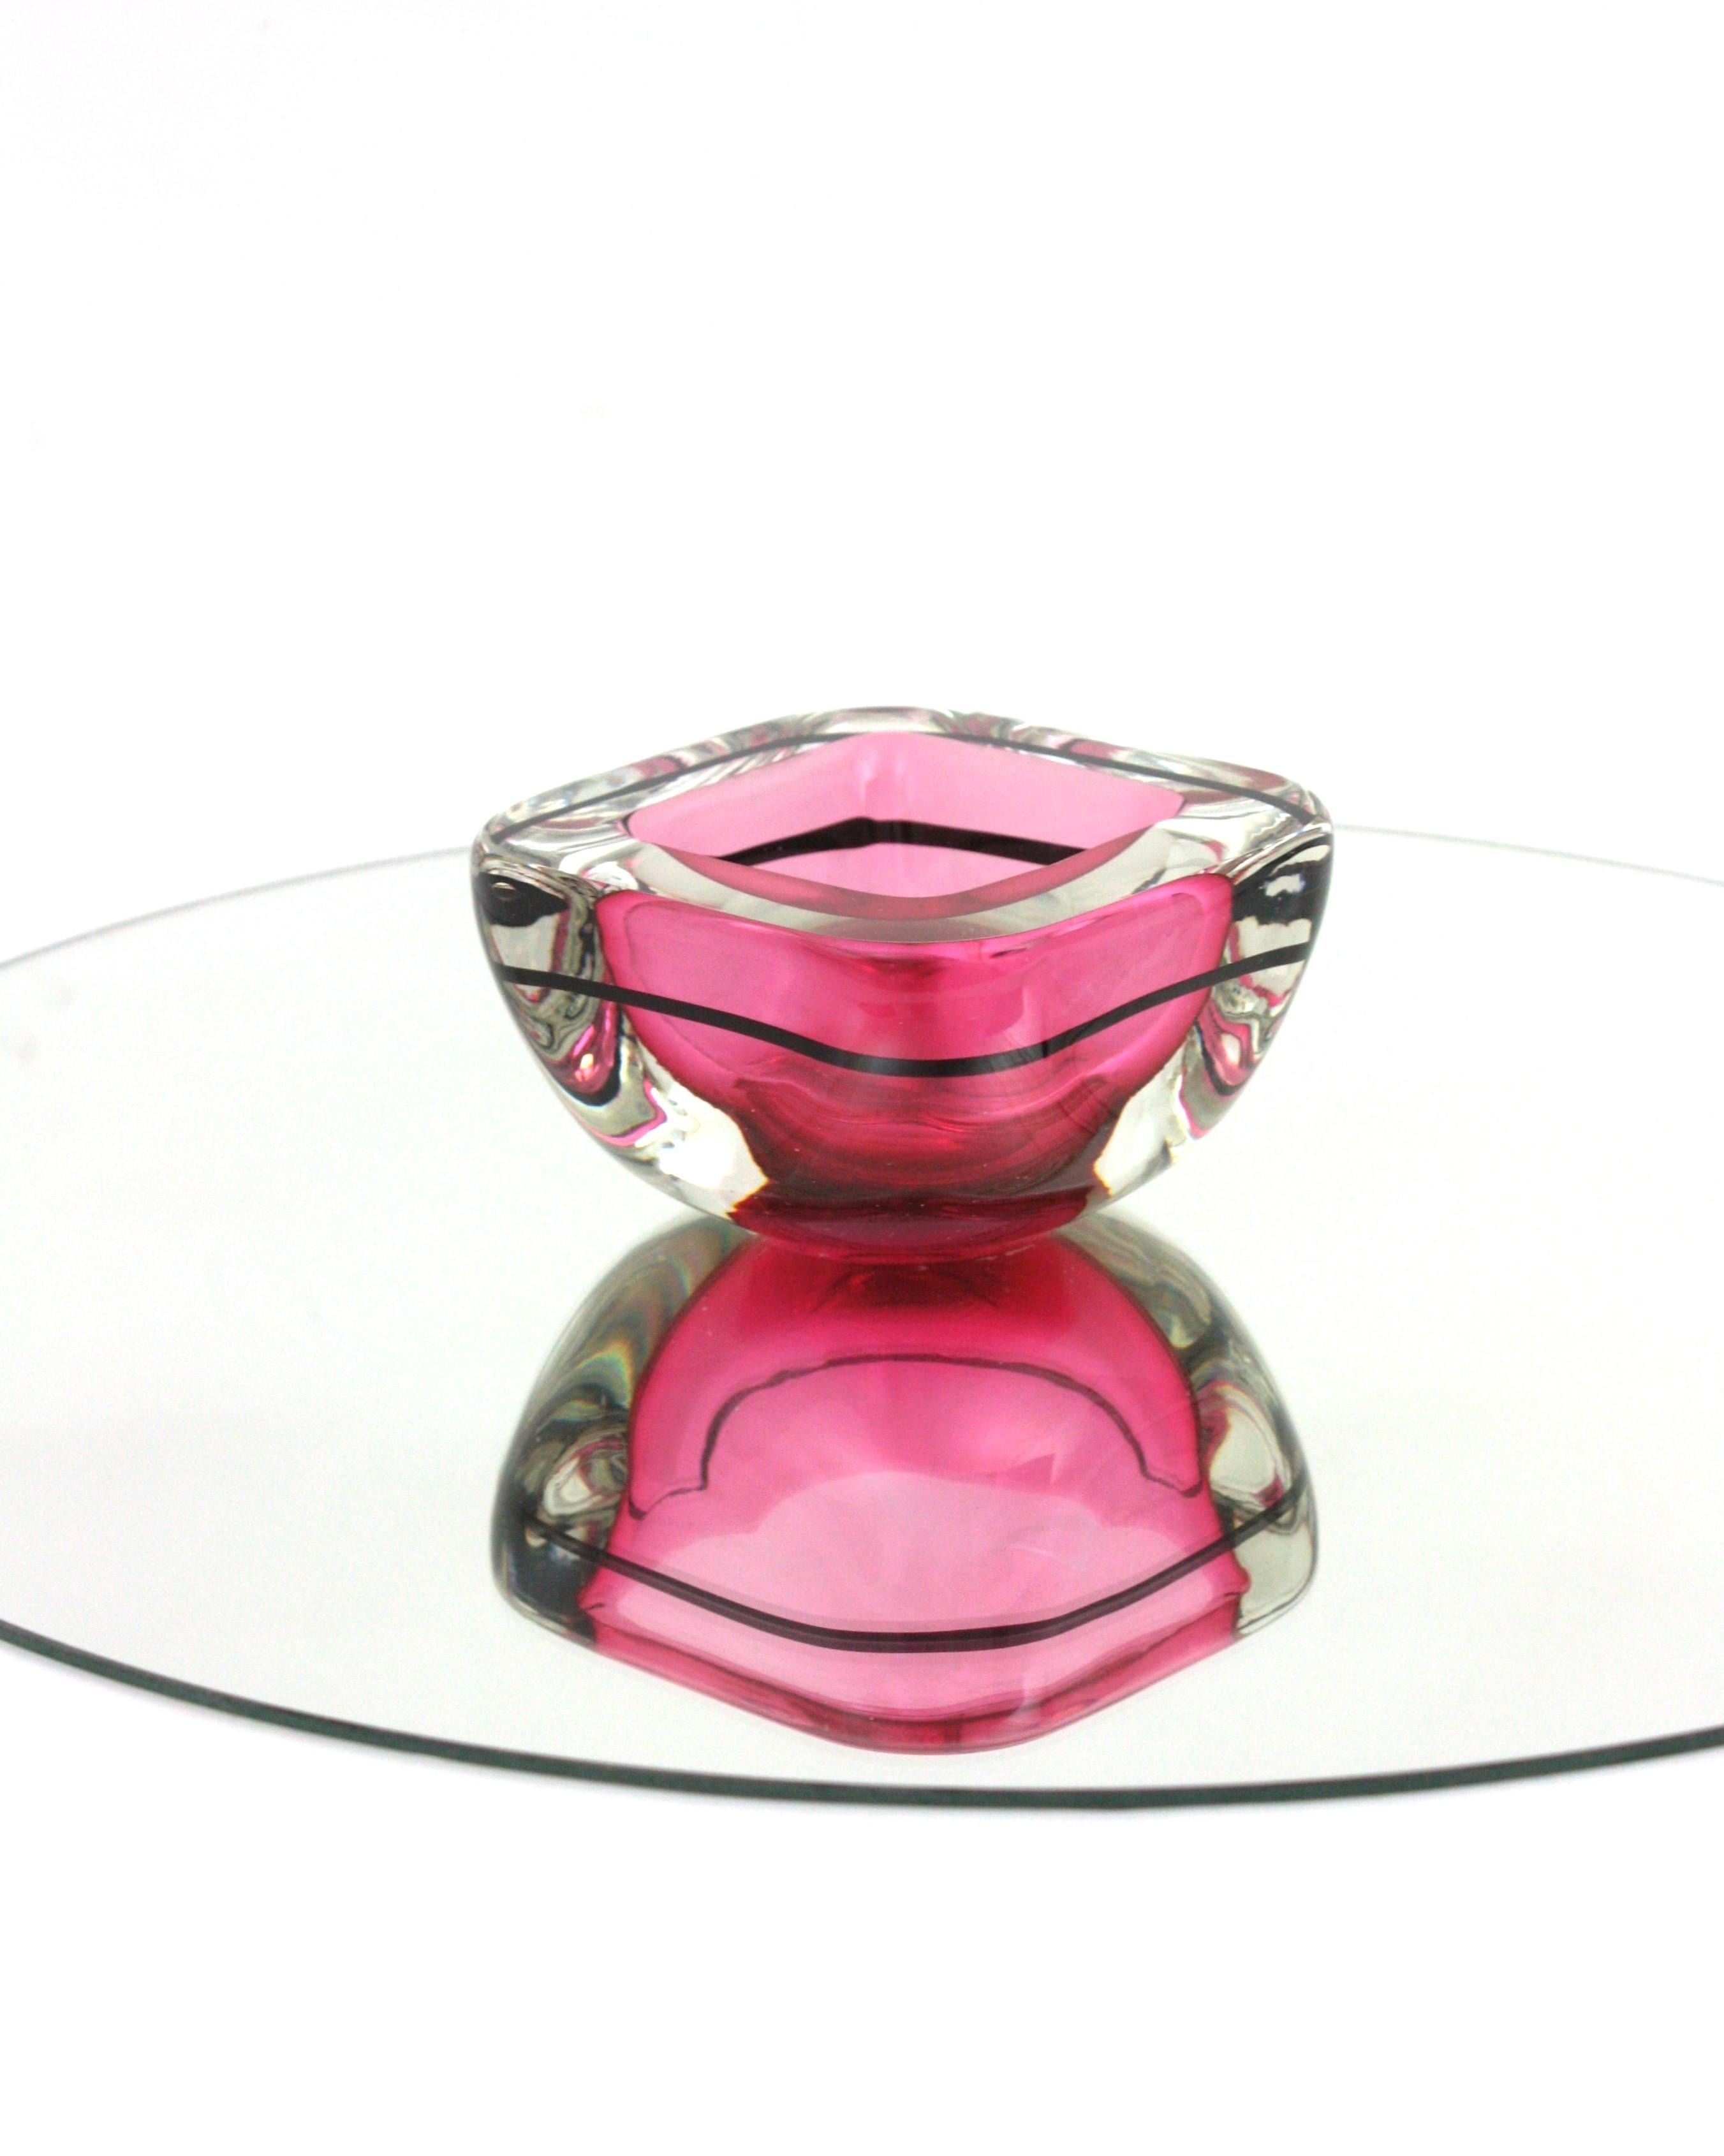 Cuenco rosa de cristal de Murano Glass Sommerso Geode con raya negra
Cuenco soplado a mano de Murano Glass Sommerso con forma cuadrada de geoda en cristal rosa, negro y transparente . Italia, años 60.
Color llamativo en rosa vibrante encapsulado en